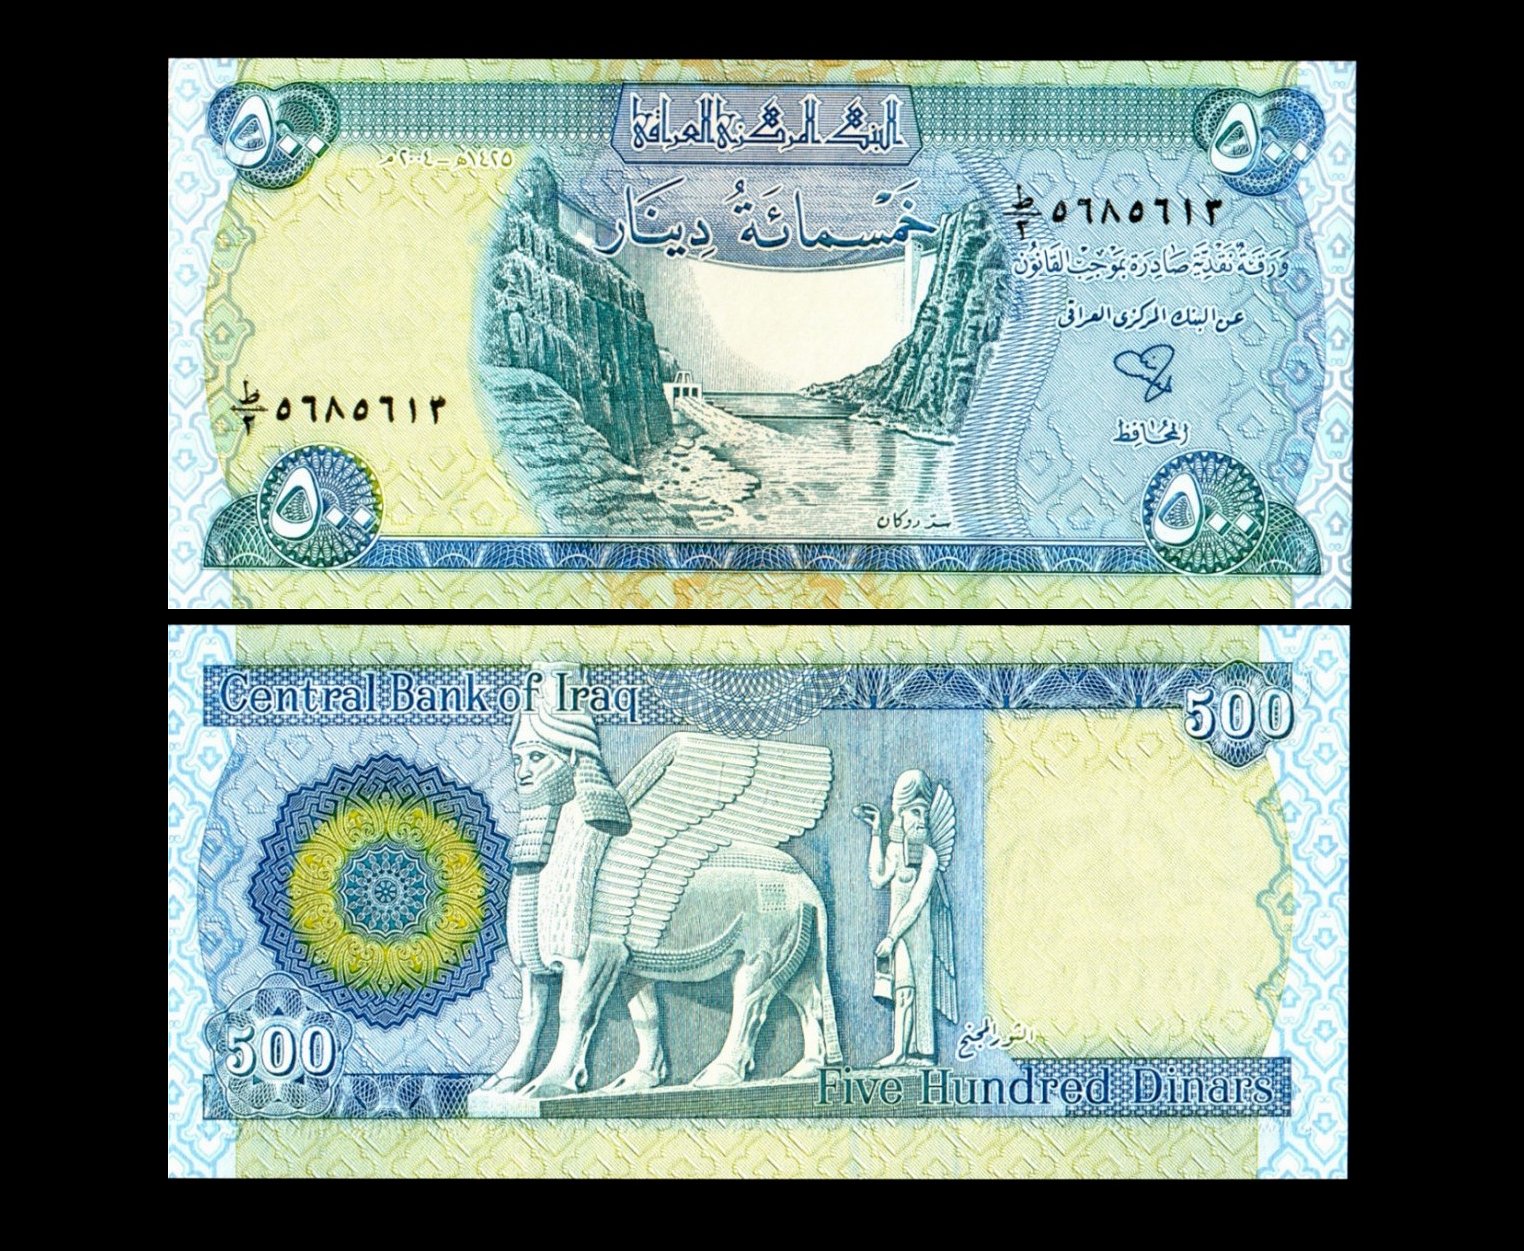 Irak 2004 - 500 dinars UNC